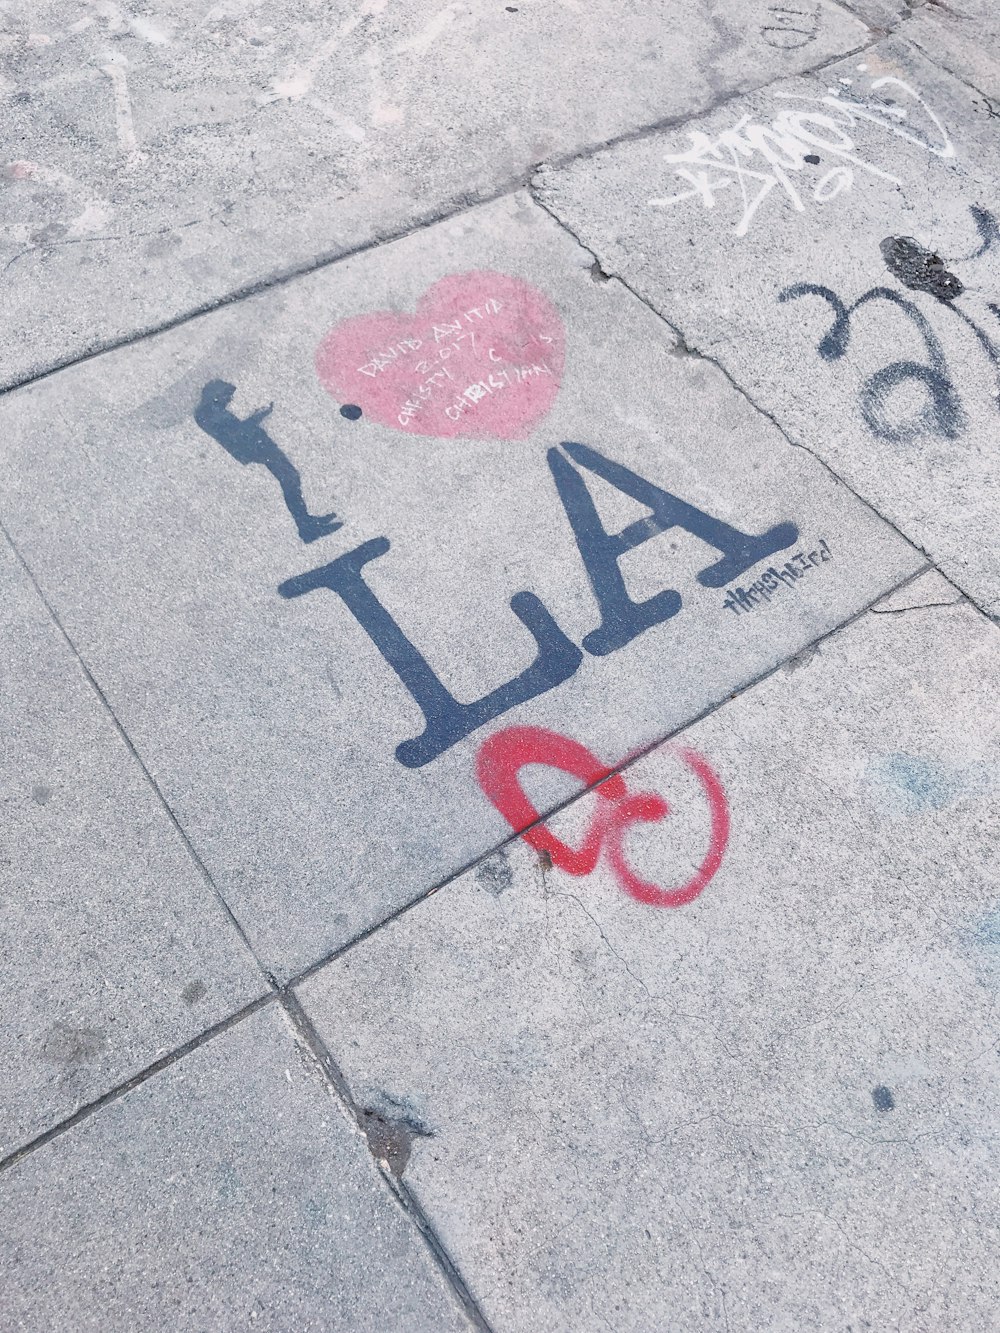 Graffiti de Los Ángeles en el pavimento